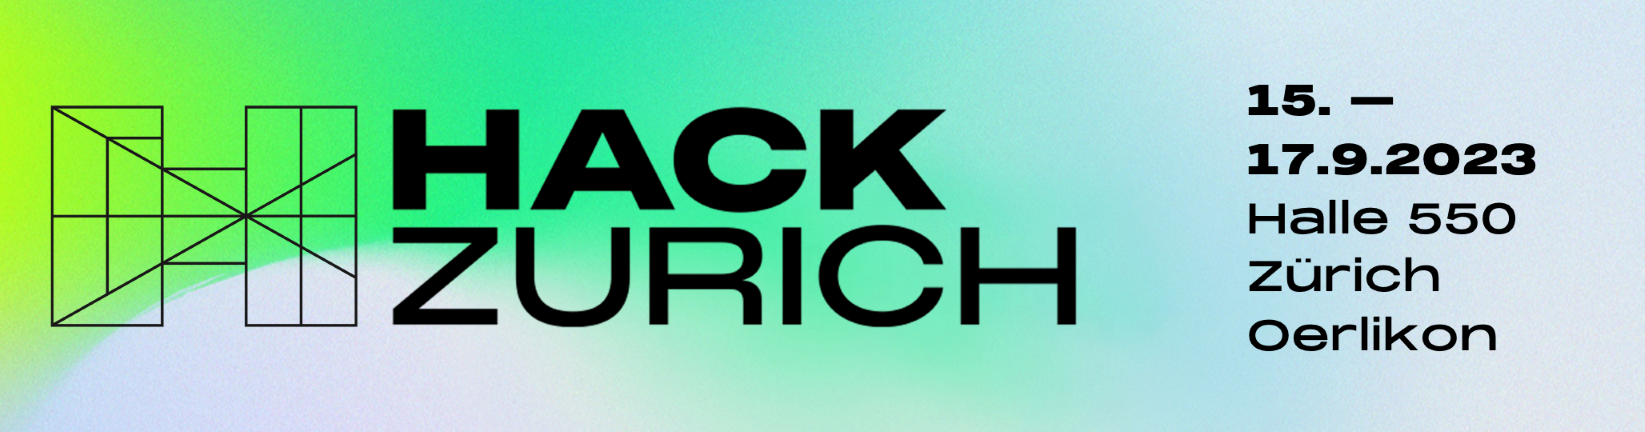 Banner Hack Zurich 2023